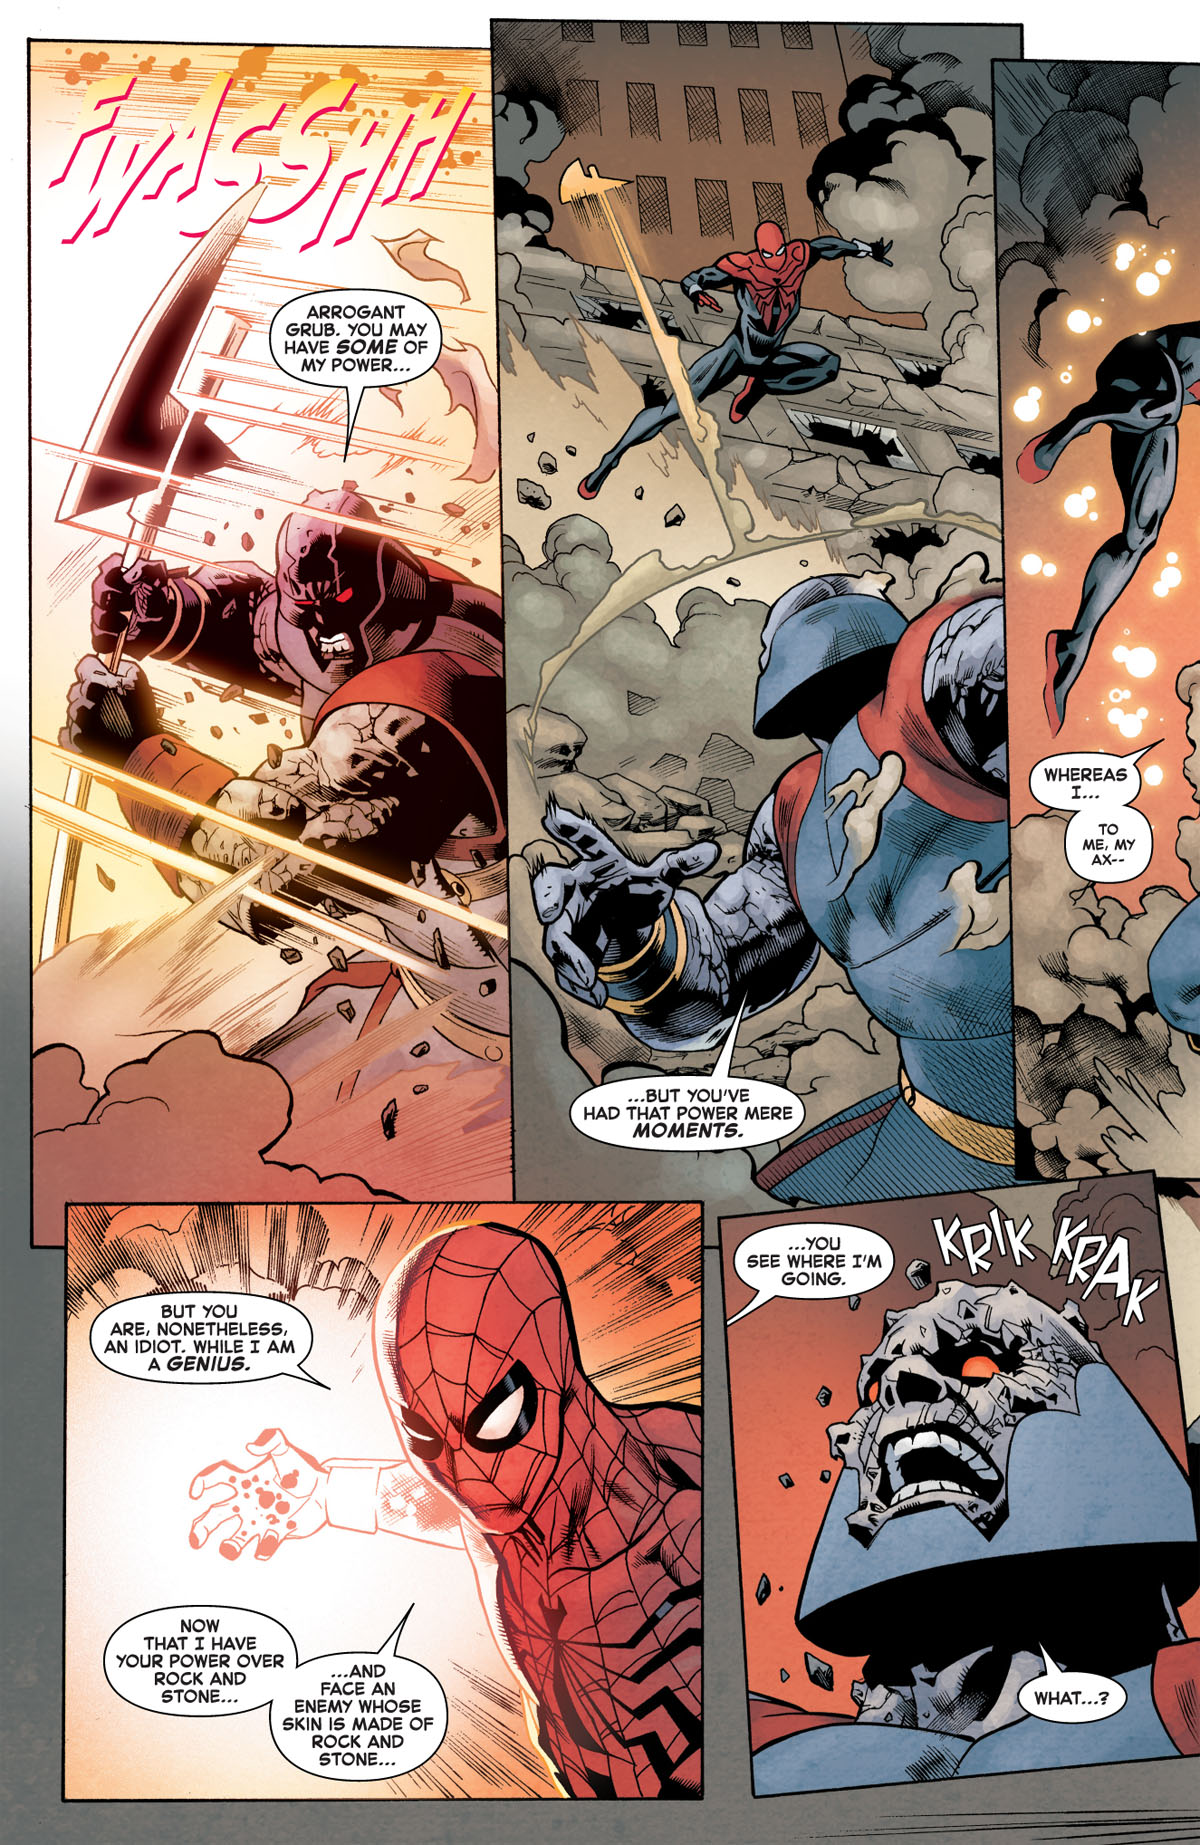 Superior Spider-Man #3 page 2